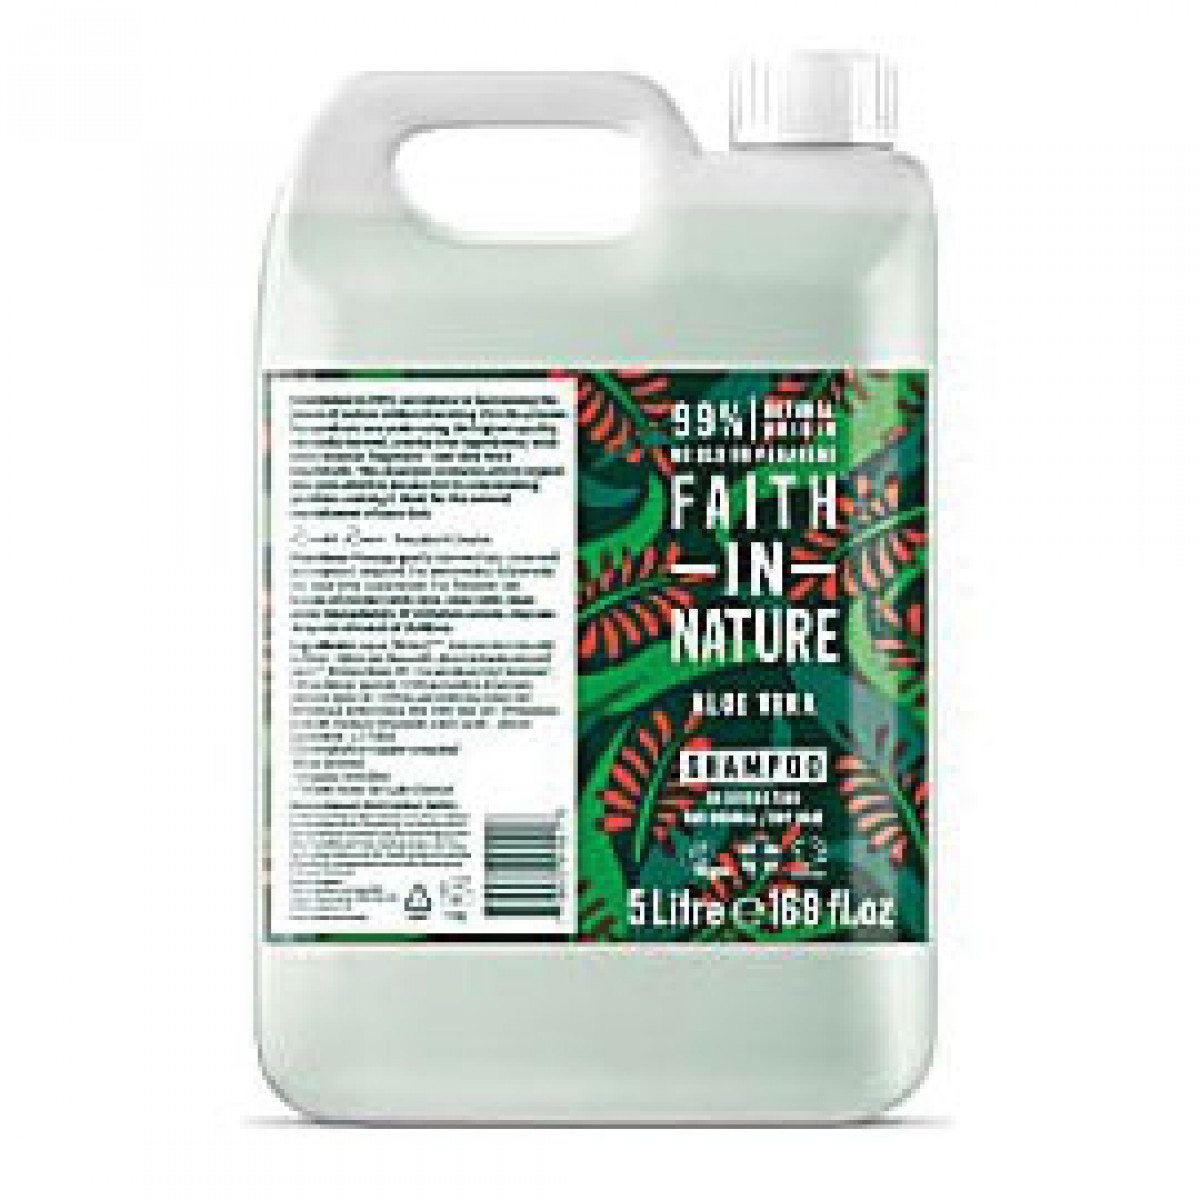 Product picture for Bulk Shampoo - Aloe Vera